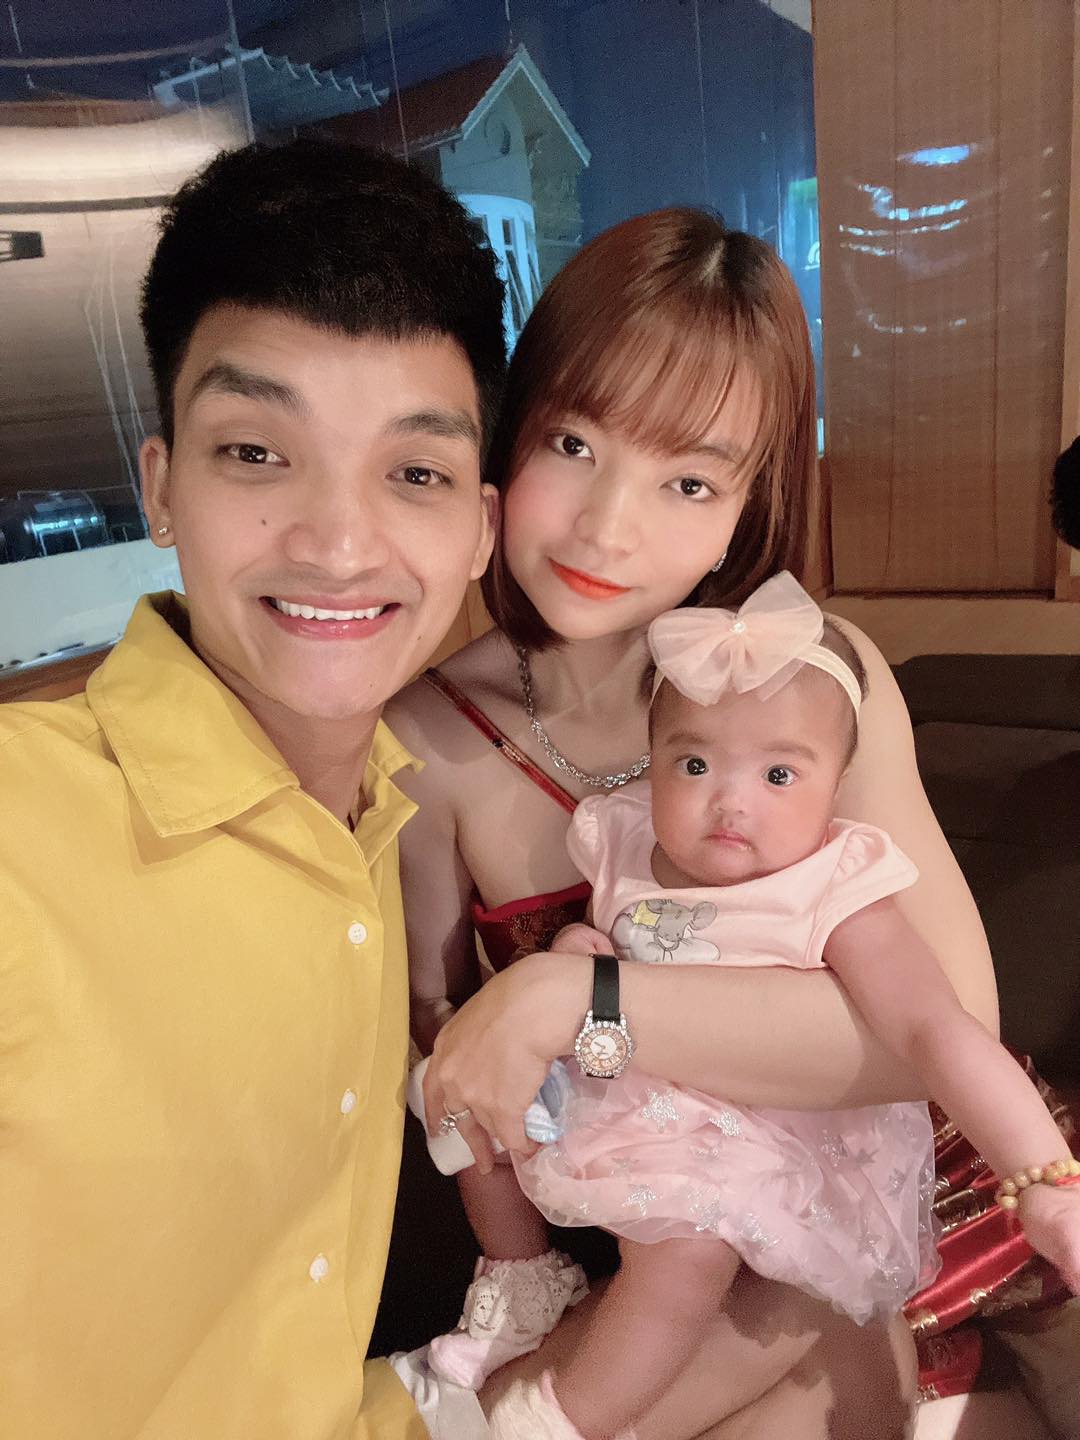 Mạc Văn Khoa khoe ảnh gia đình hạnh phúc, netizen xỉu up xỉu down với gương mặt tấu hài của cô con gái - Ảnh 3.